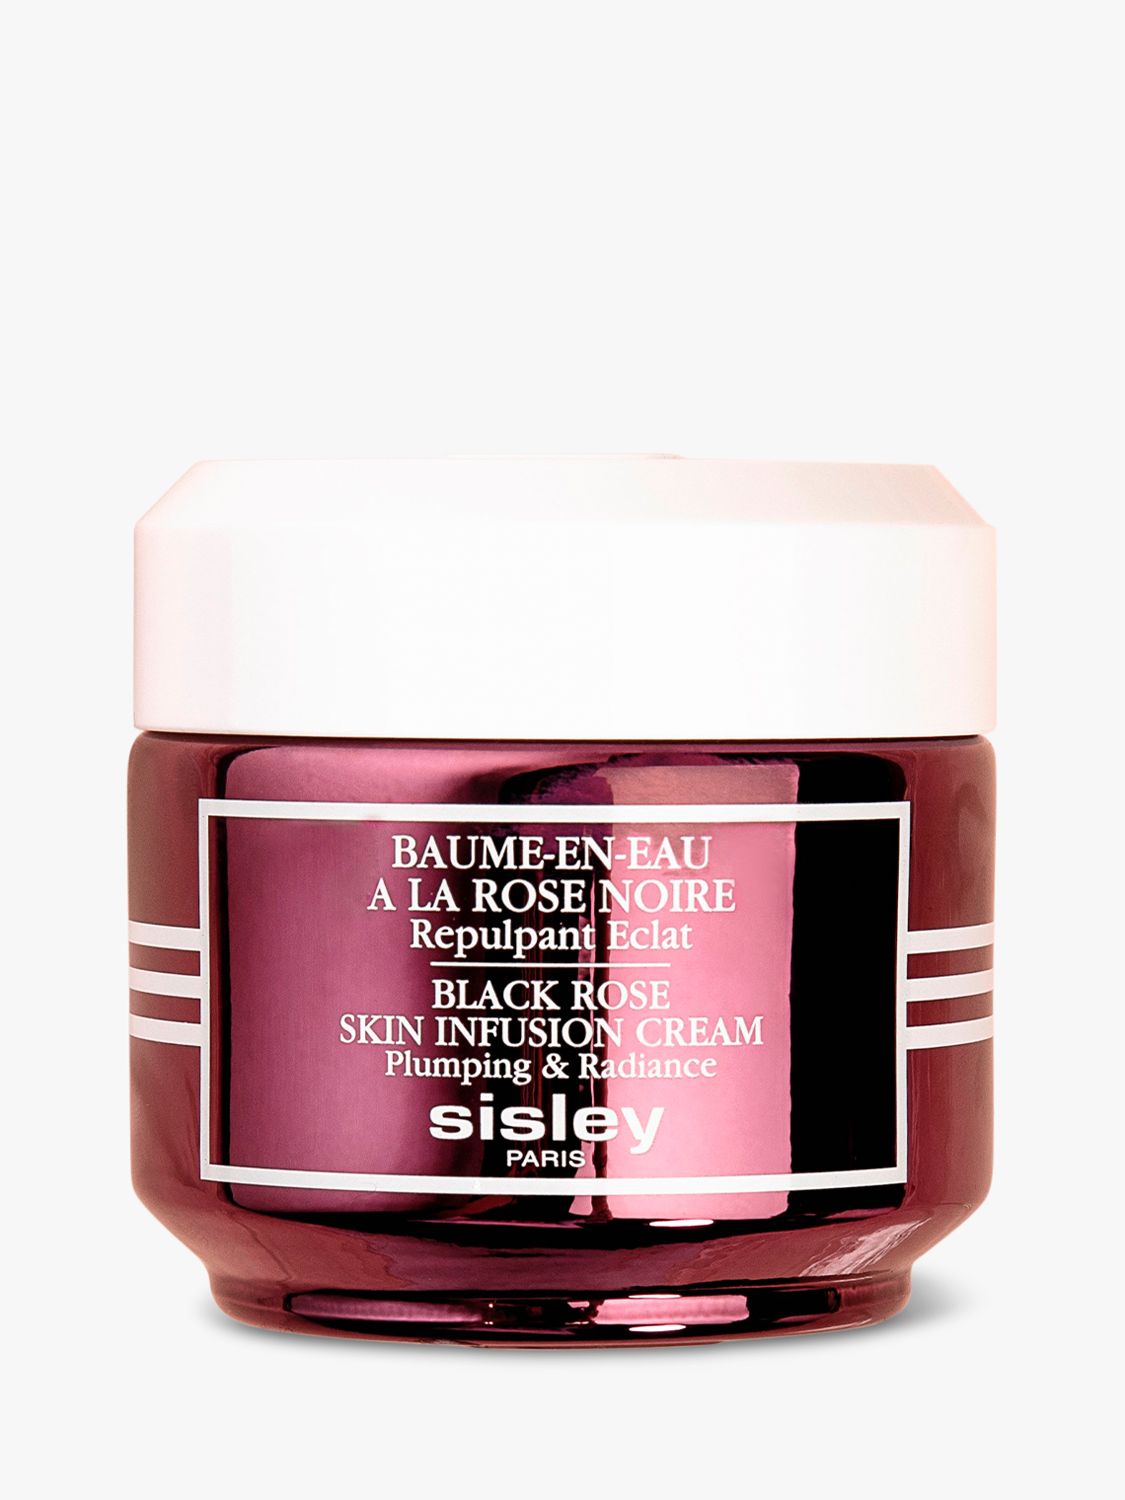 Sisley-Paris Black Rose Skin Infusion Cream, Plumping & Radiance, 50ml 4